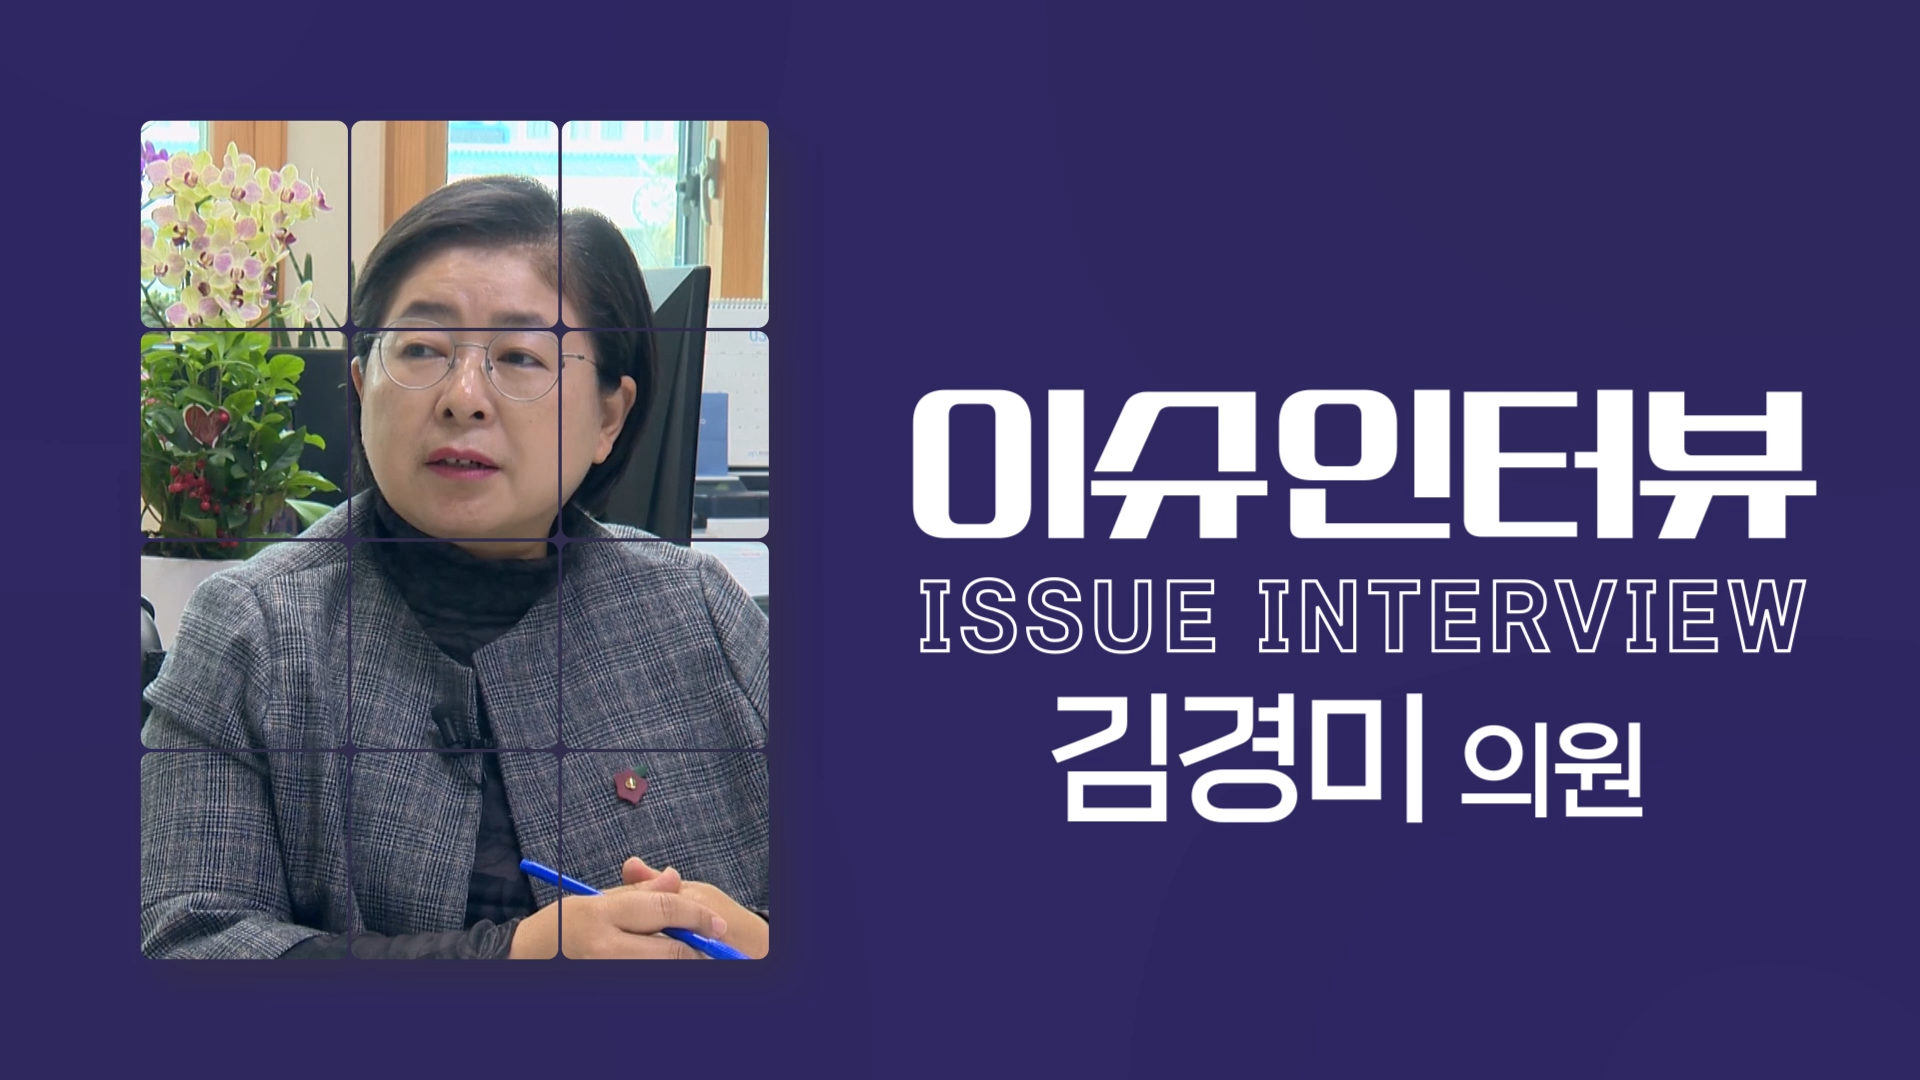 제413회 제주특별자치도의회 임시회 이슈인터뷰(김경미 의원)